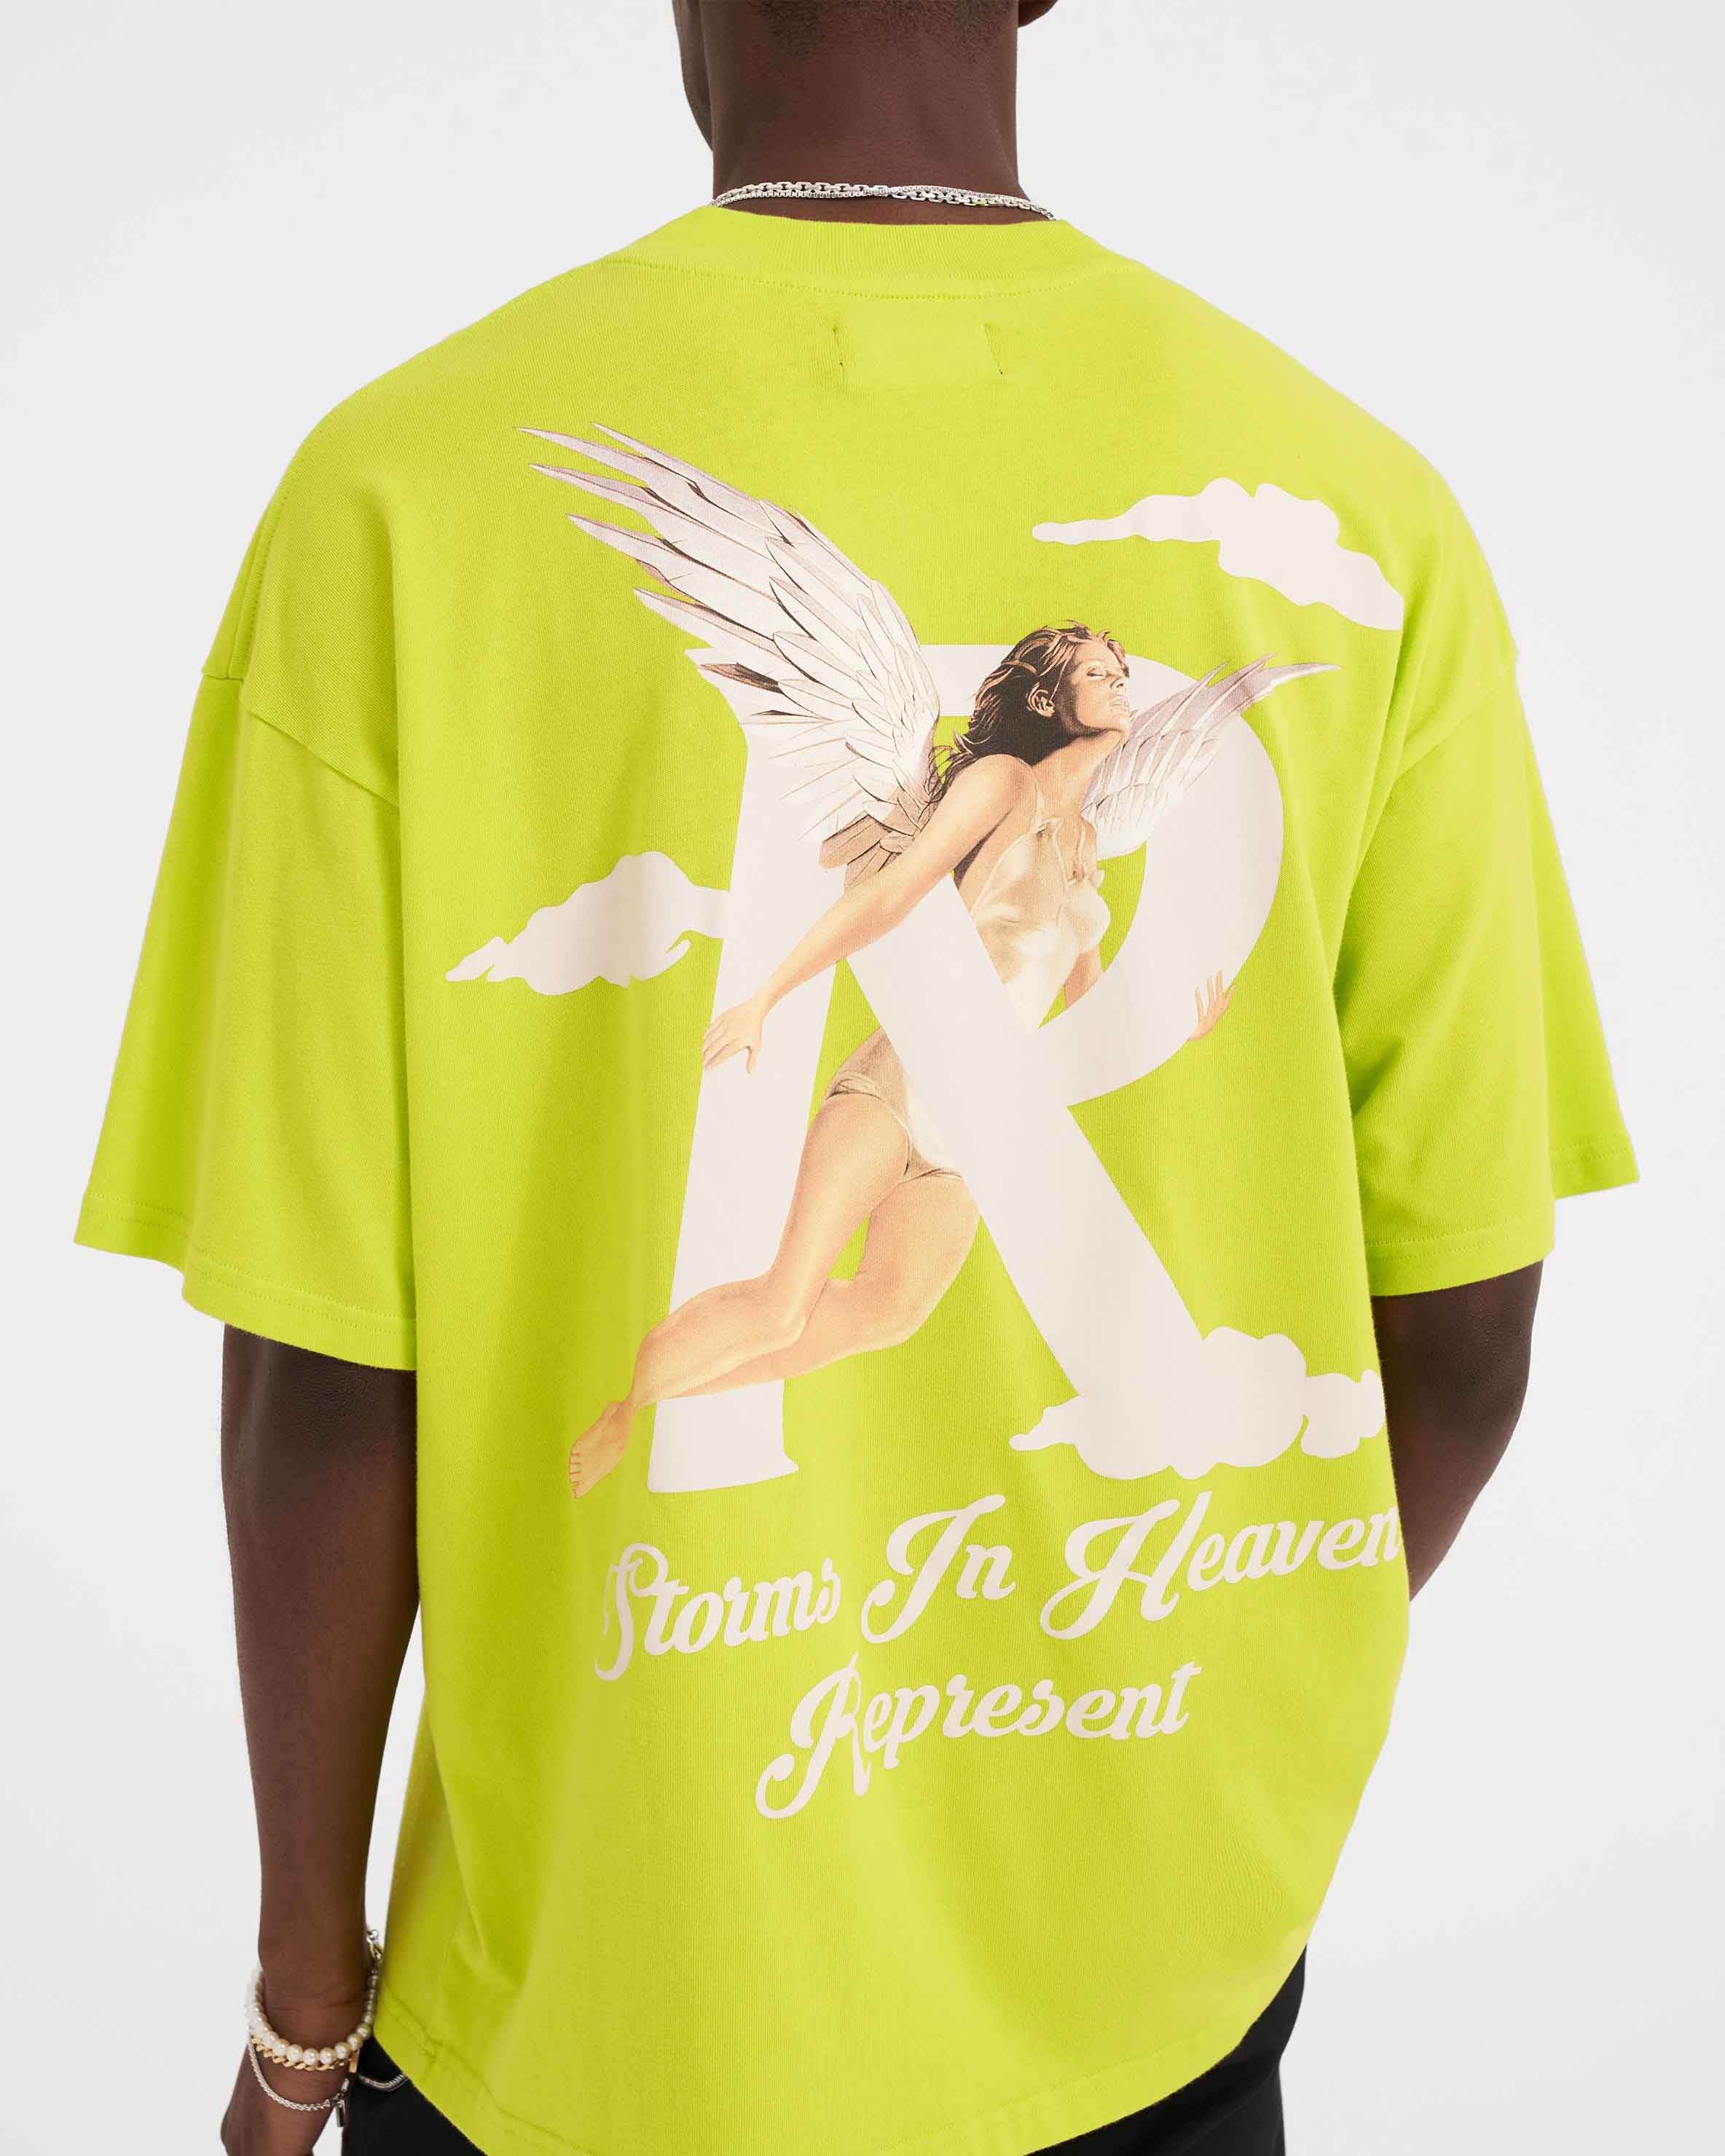 Storms in Heaven T-Shirt - Kiwi